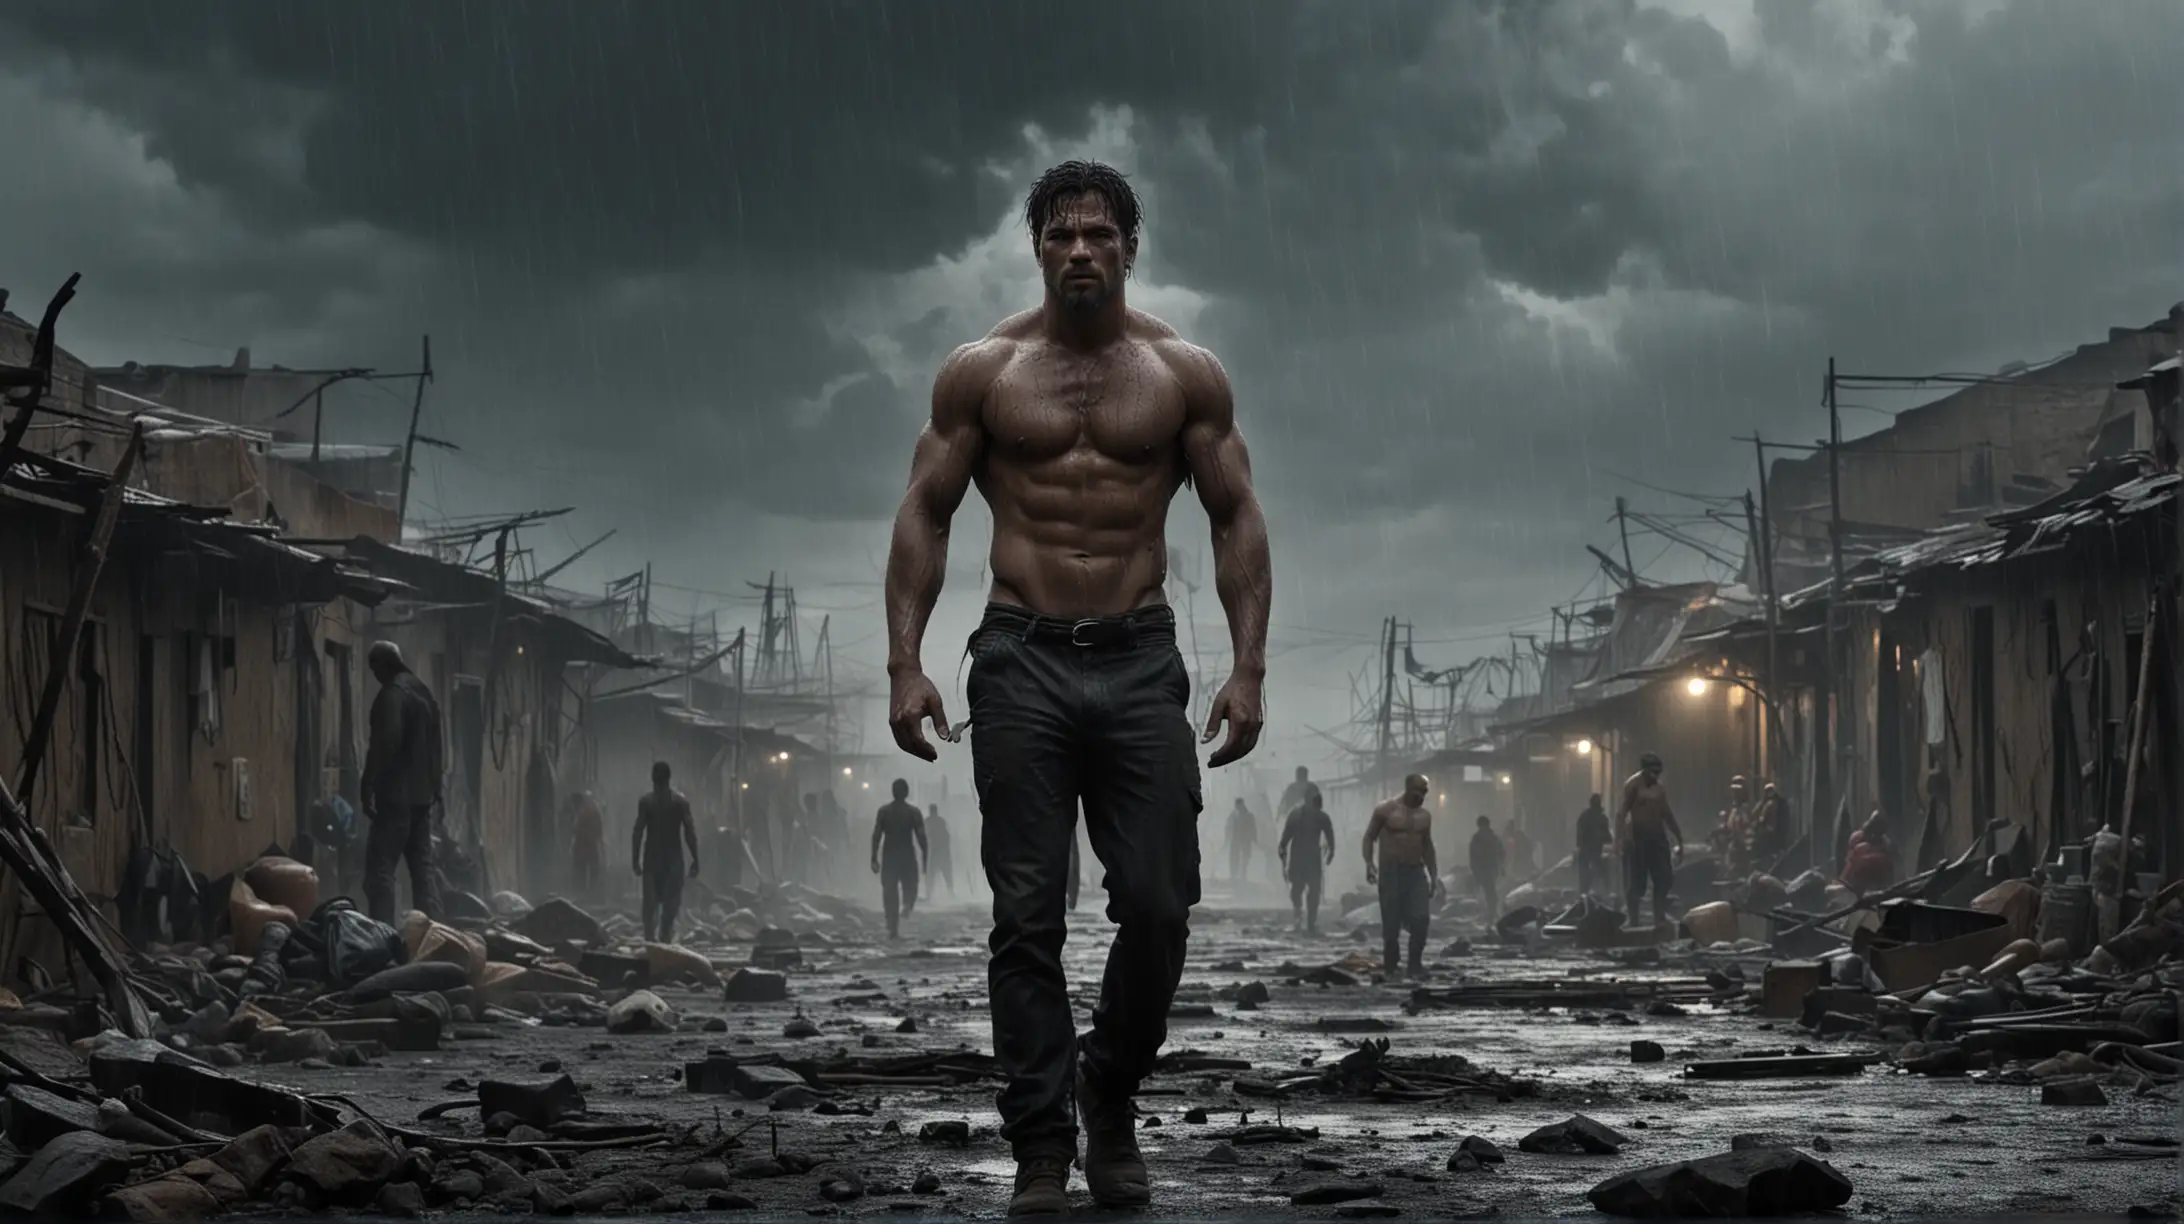 strong male, center, Survival movie scene, action, thunder weather, dark slum background